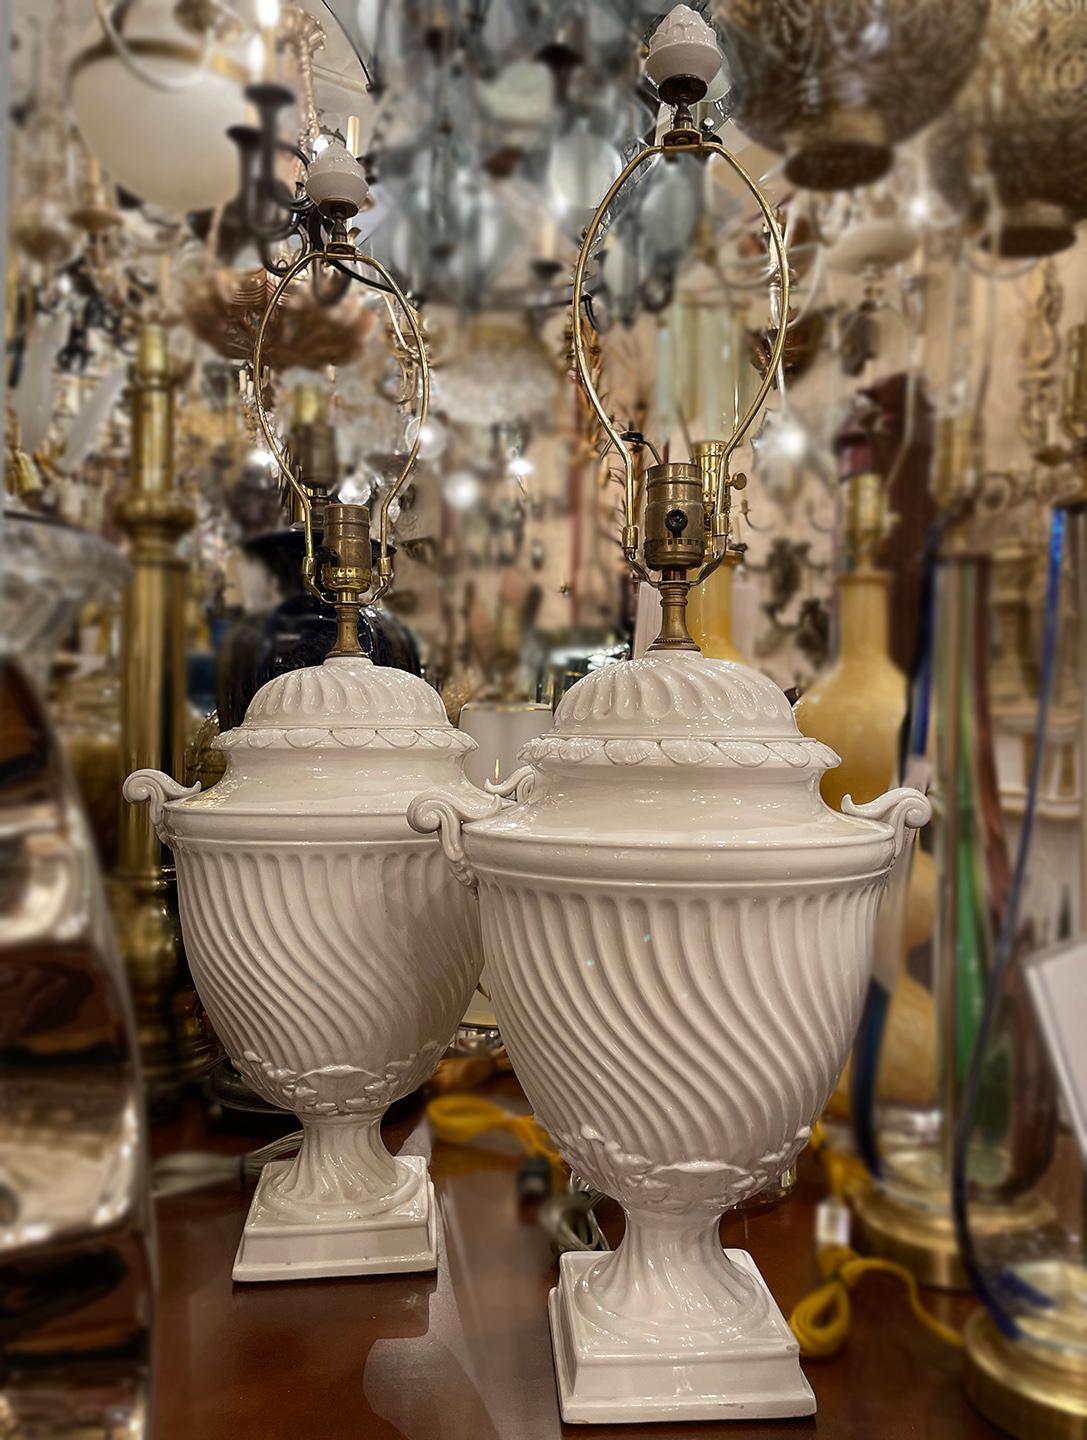 Une paire de lampes de table en porcelaine anglaise de conception néoclassique datant des années 1920.

Mesures :
Hauteur du corps : 18
Diamètre : 7